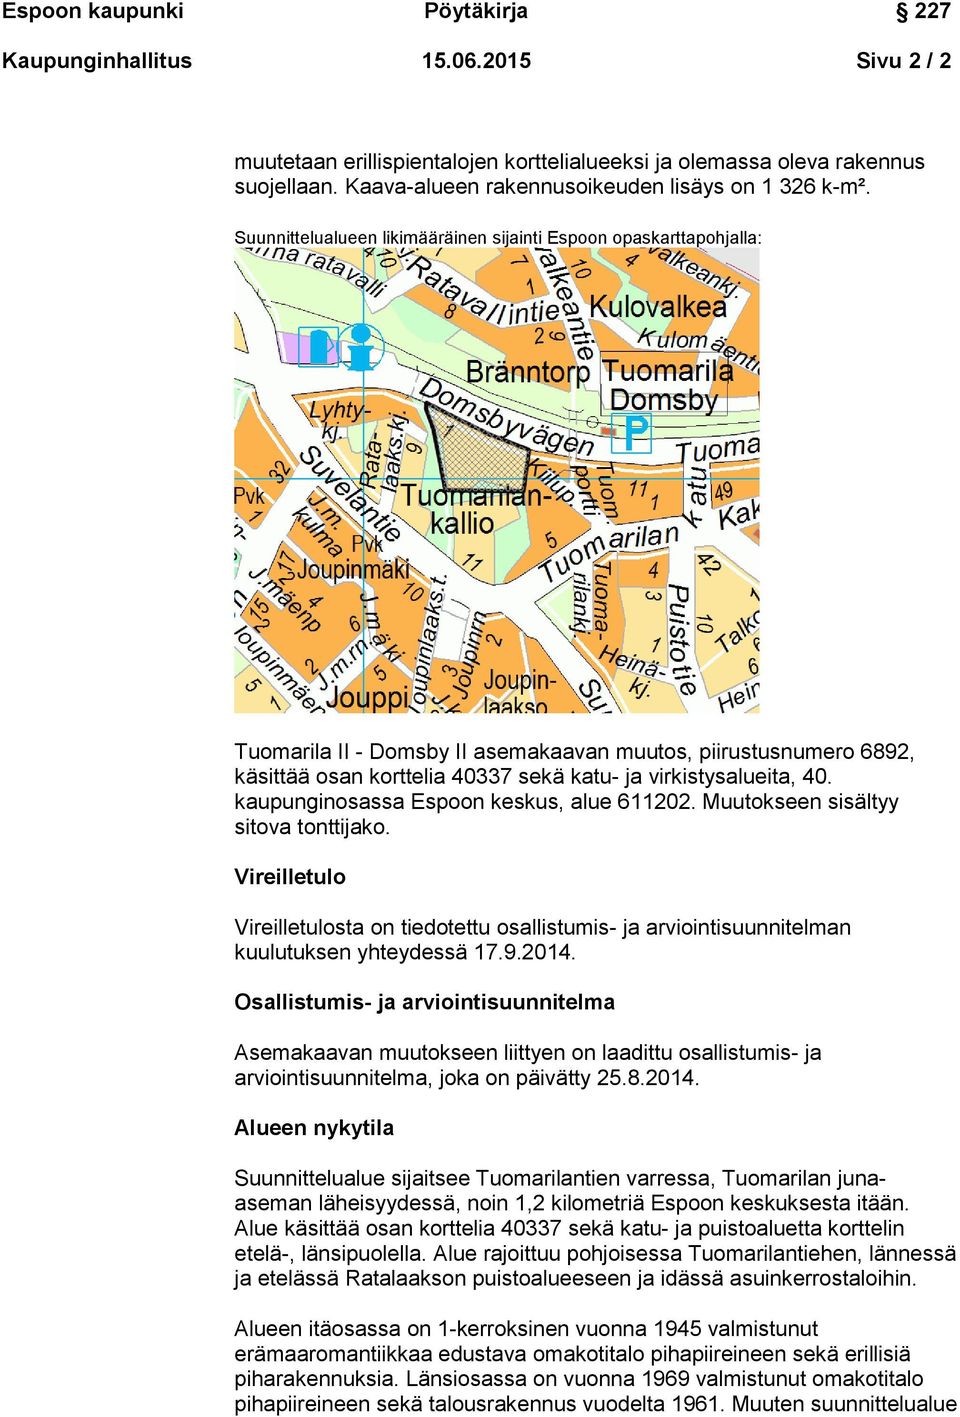 kaupunginosassa Espoon keskus, alue 611202. Muutokseen sisältyy sitova tonttijako. Vireilletulo Vireilletulosta on tiedotettu osallistumis- ja arviointisuunnitelman kuulutuksen yhteydessä 17.9.2014.